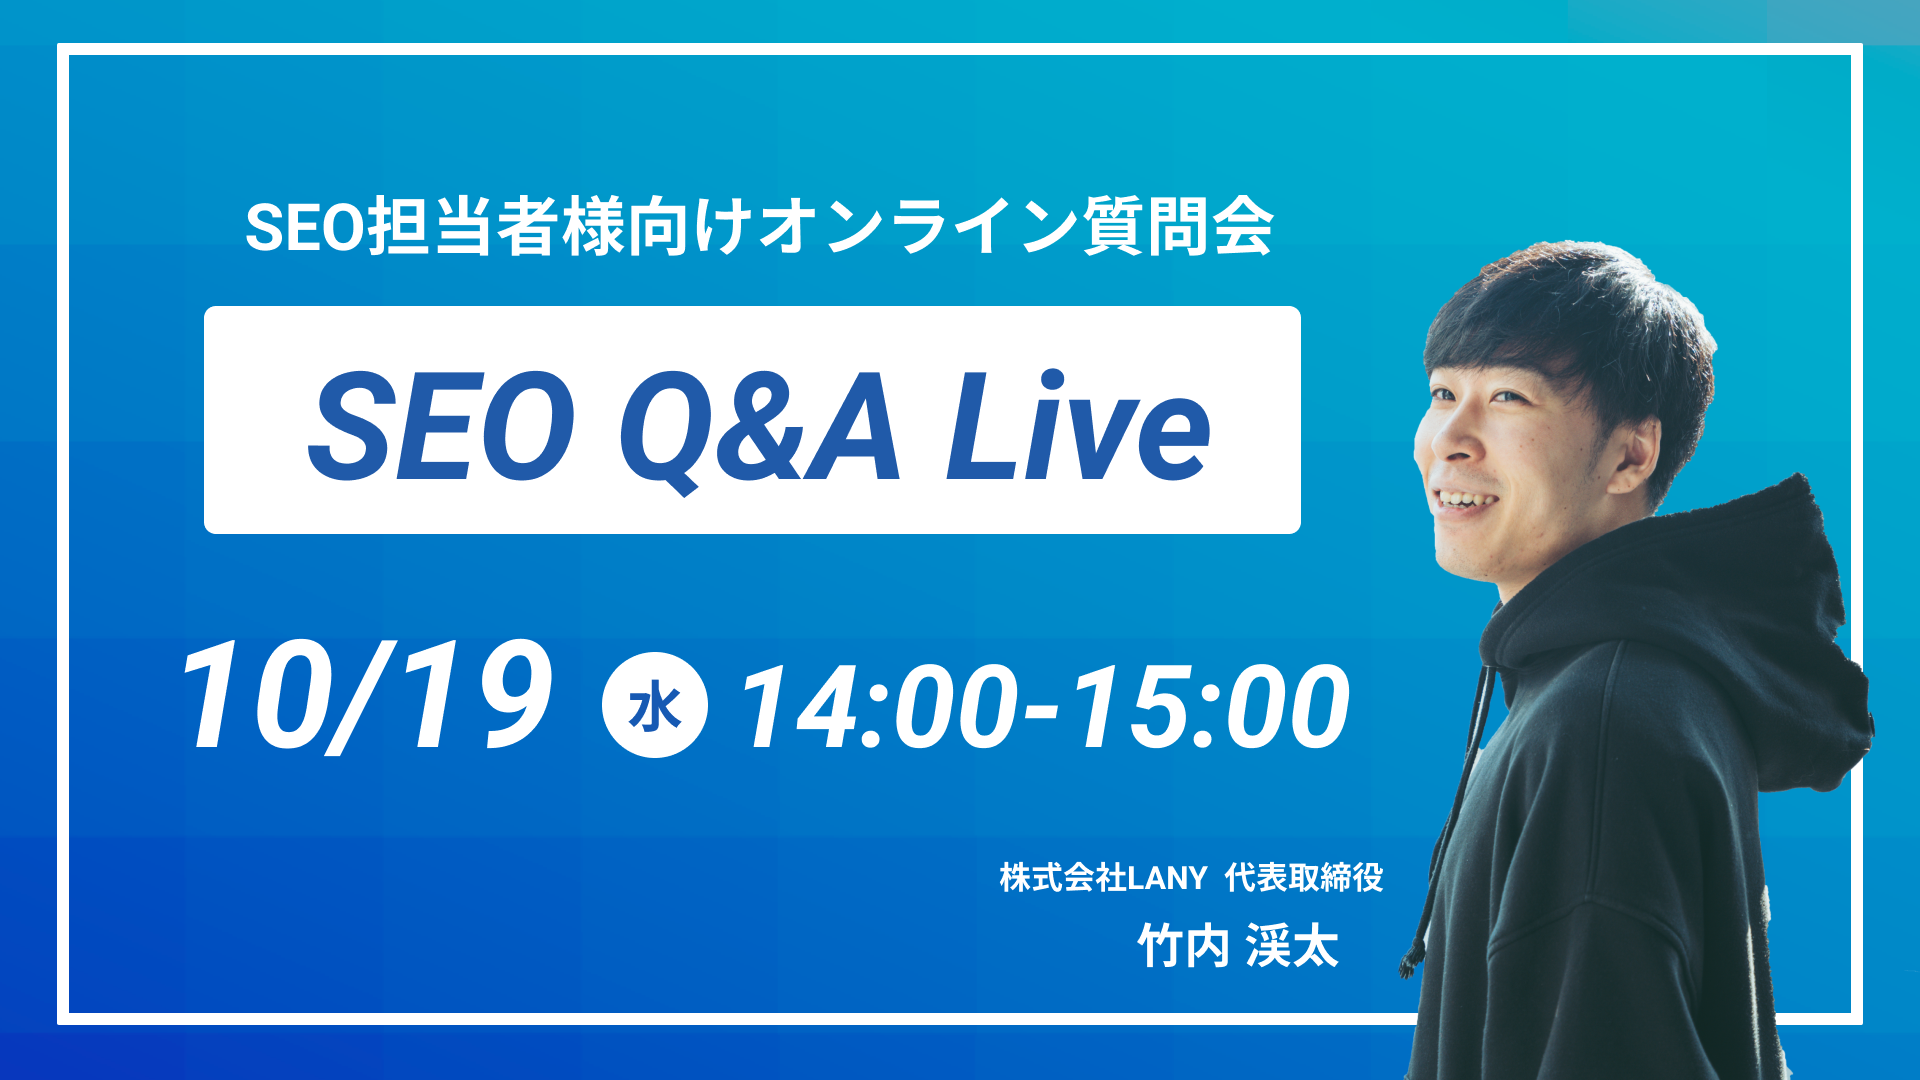 SEO Q&A Live